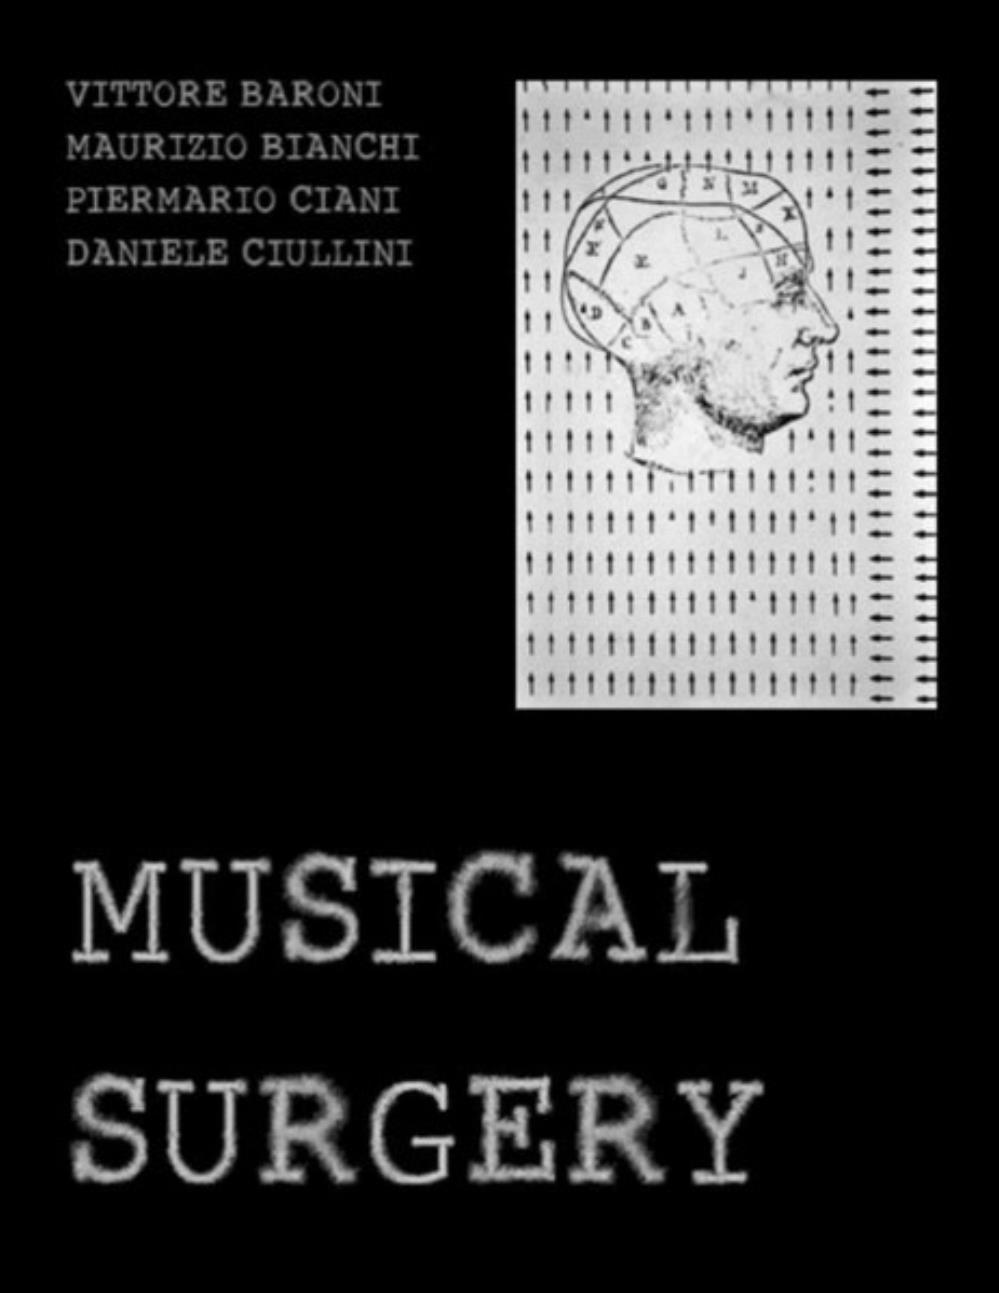 Maurizio Bianchi Musical Surgery (collaboration with Vittore Baroni, Piermario Ciani & Daniele Ciullini) album cover